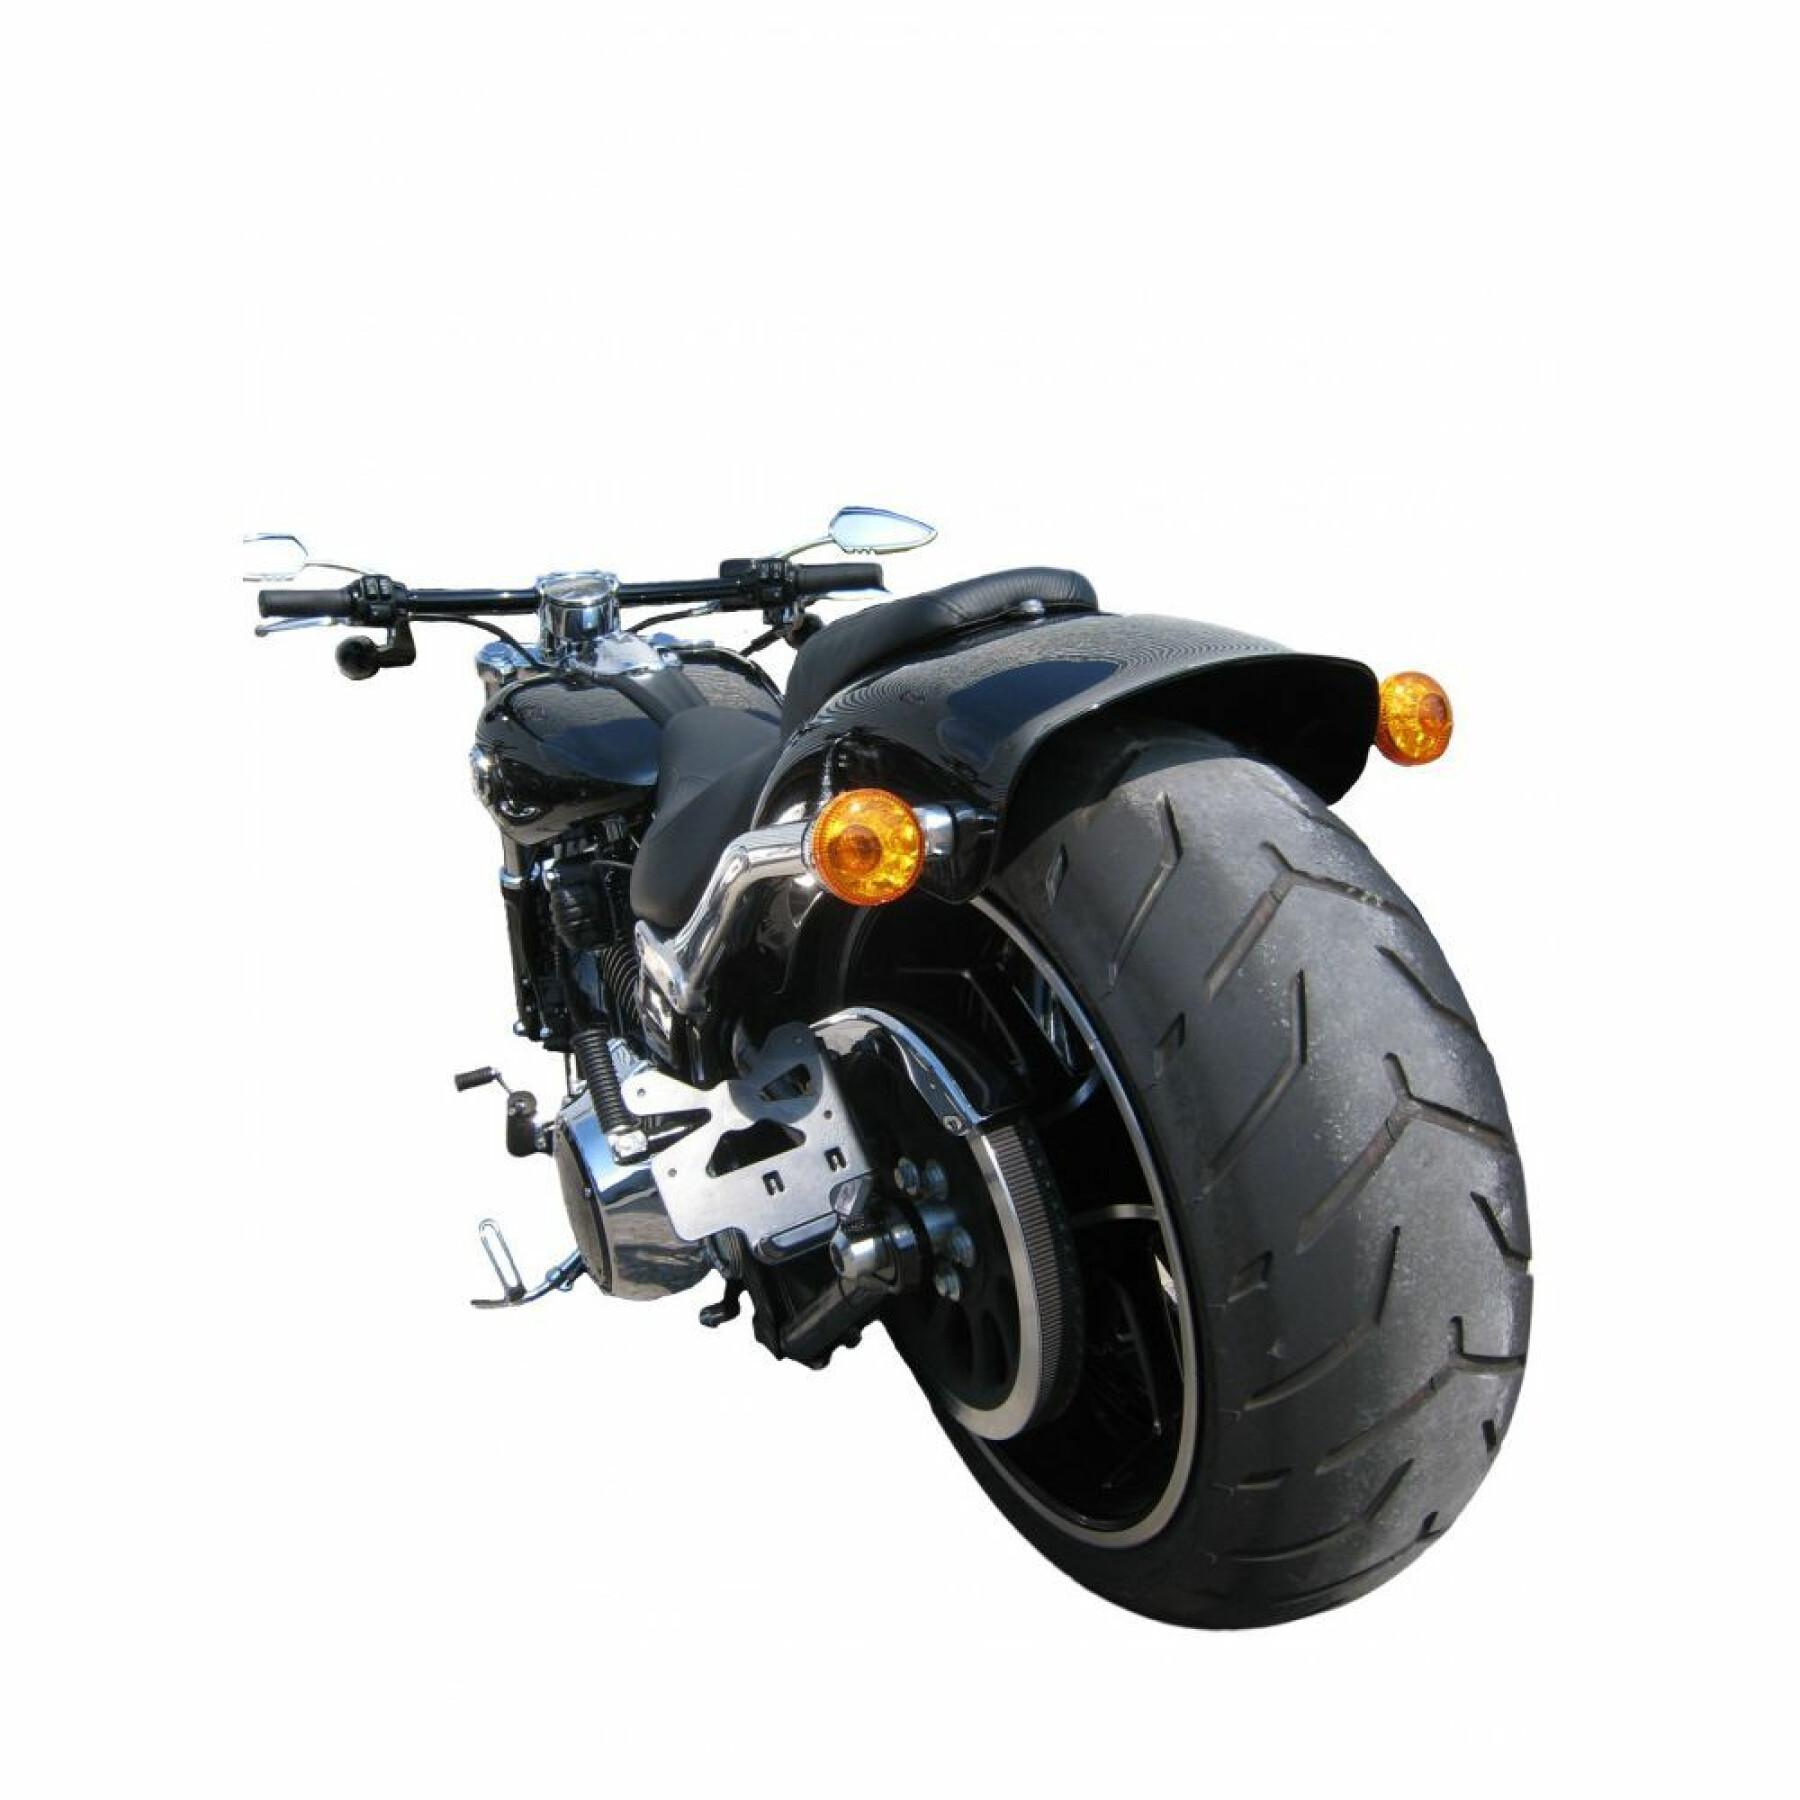 Motorradkennzeichenhalter Btob Moto Fxsb Breakout 103 13-17